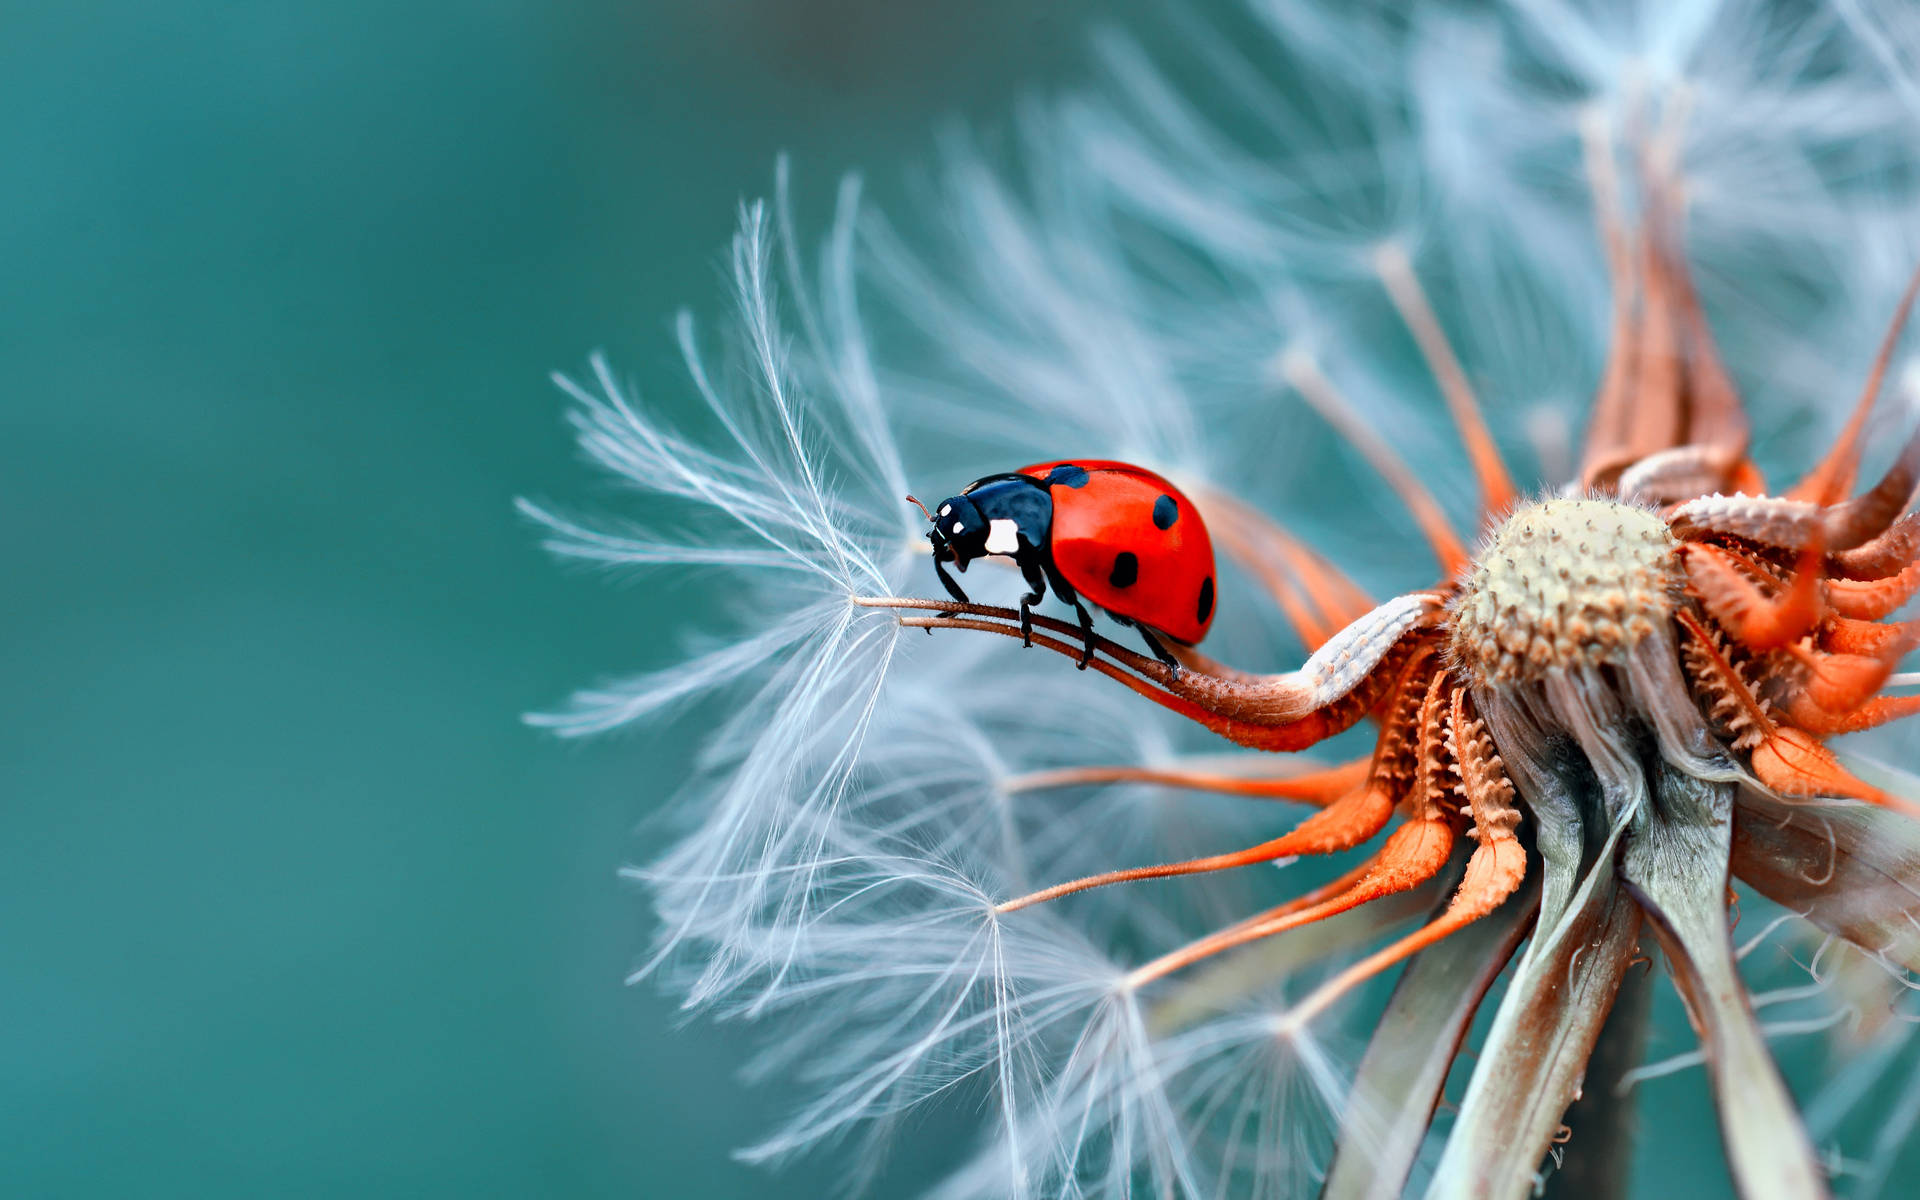 Nature Ladybug Photography Desktop 4k Background